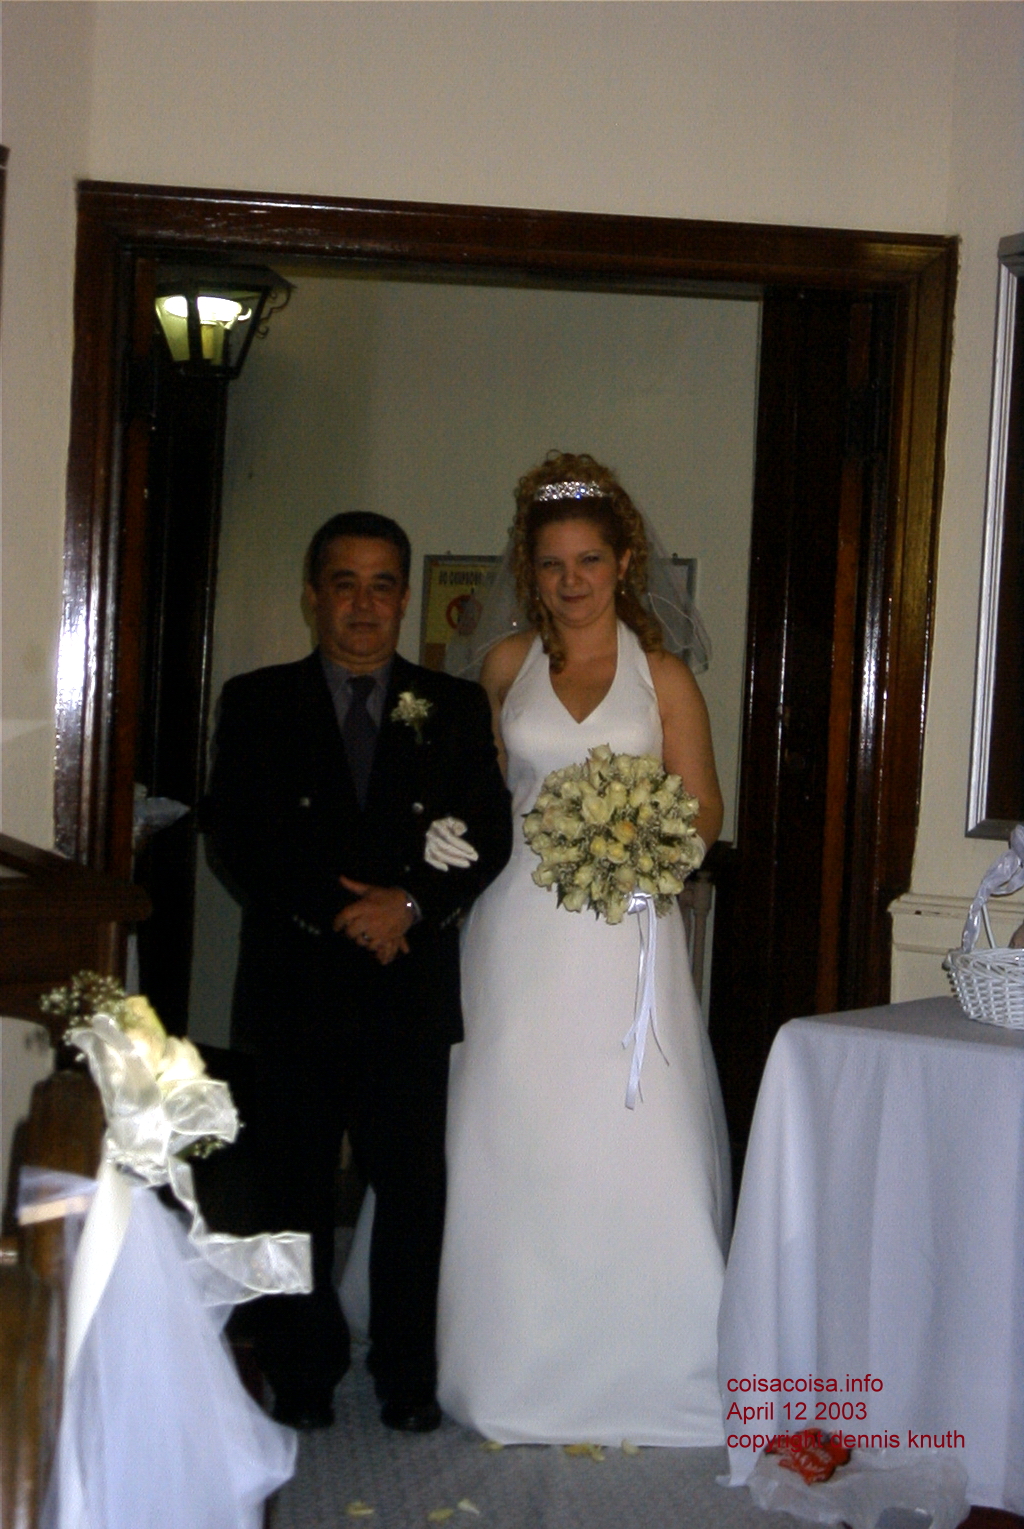 
rosangela_wedding_during_2003_0412_05.jpg (large)